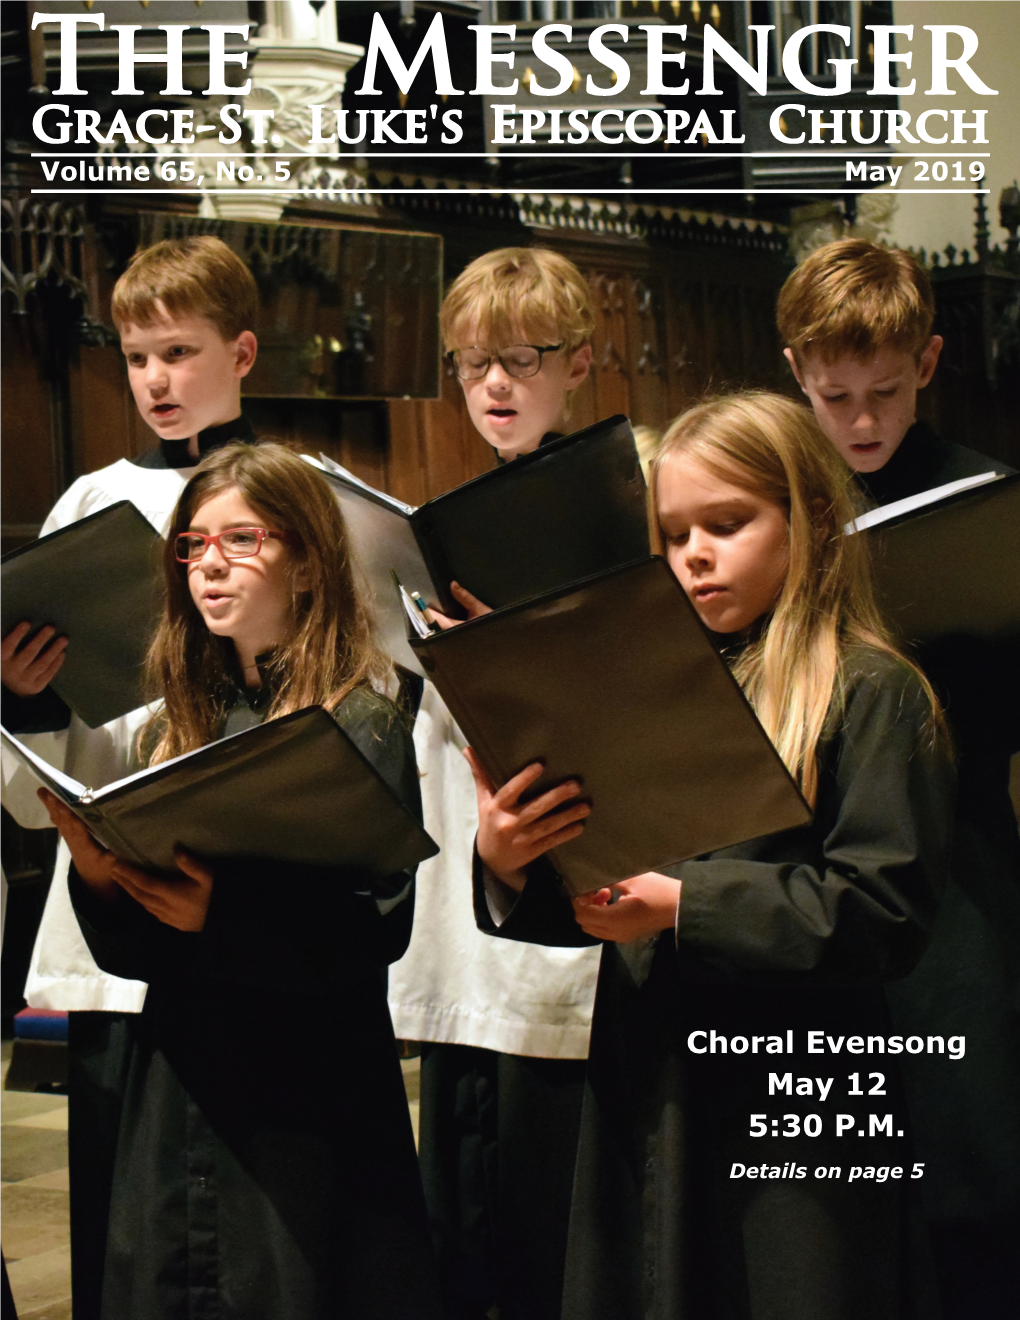 Choral Evensong May 12 5:30 PM